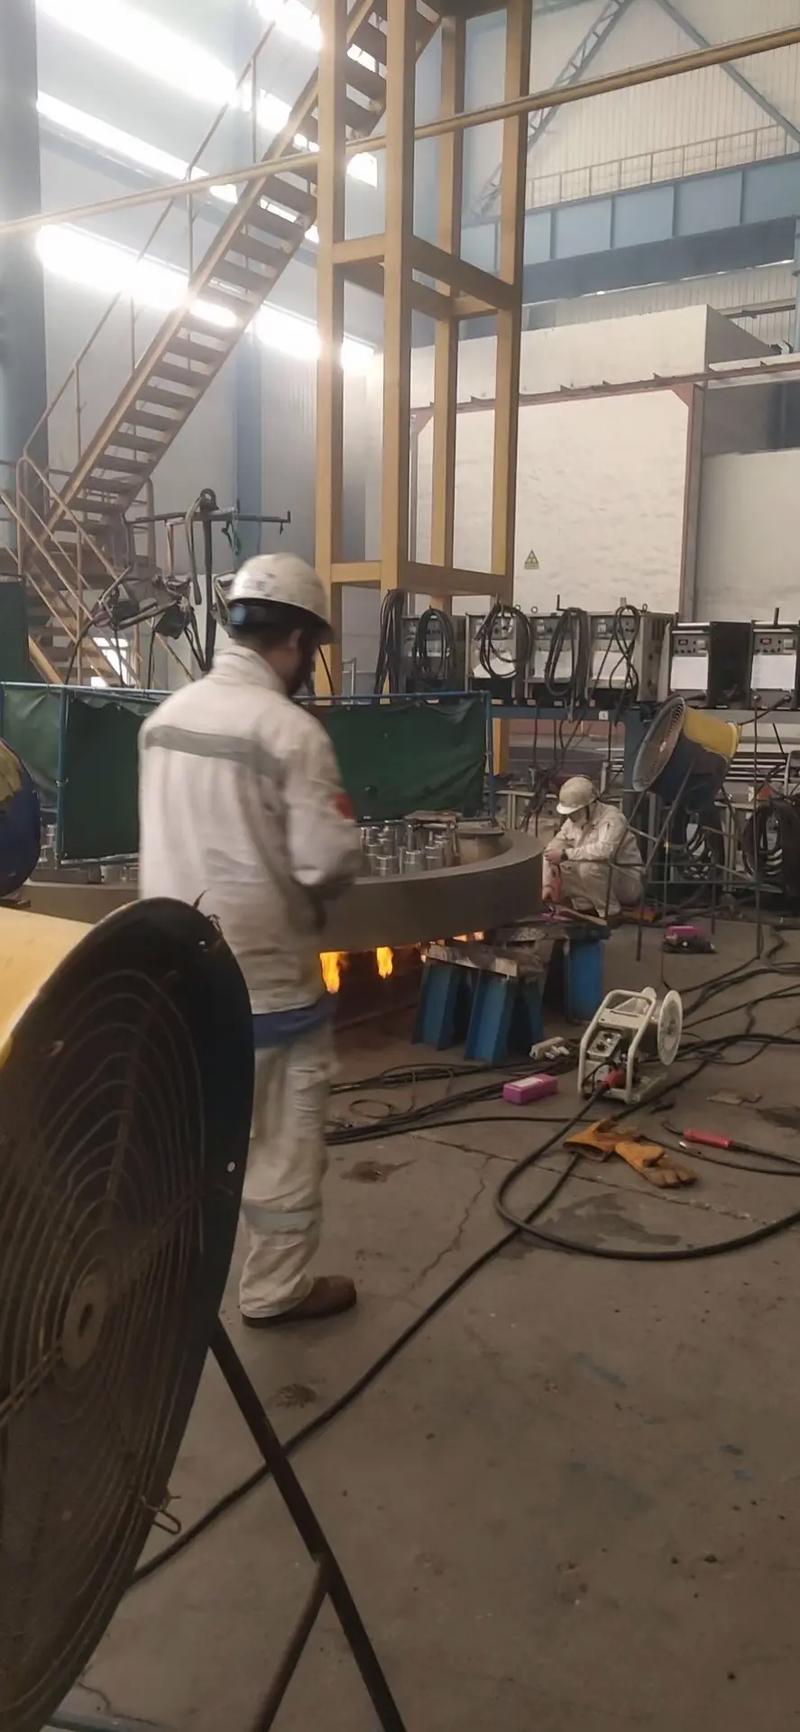 江苏压力容器厂招氩电焊工,考成型白钢氩电,一天五百,工资月发 - 抖音